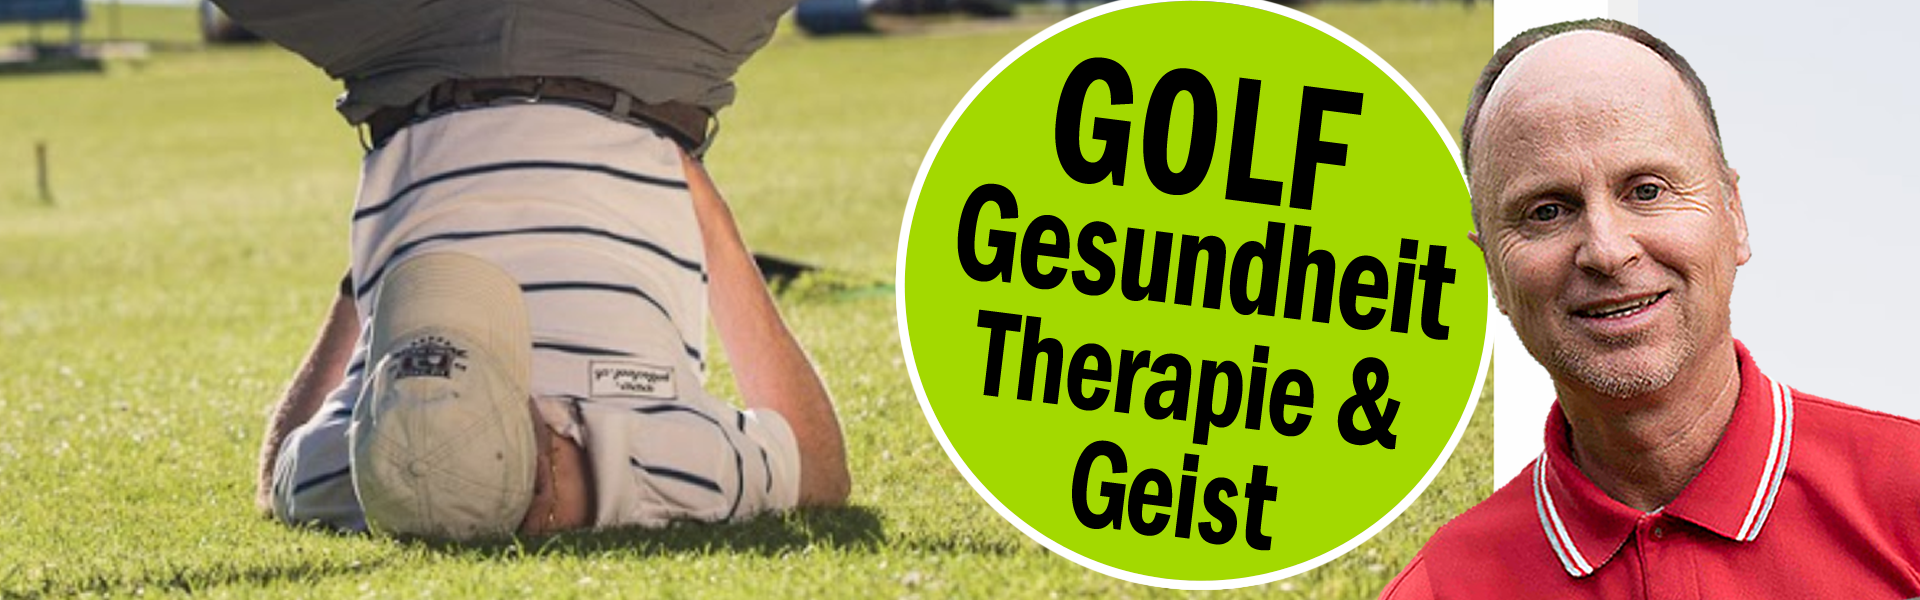 Golf-Gesundheit-Zuerich-Golf-Therapie-Geist-Seele-Golflehrer-Pro-03